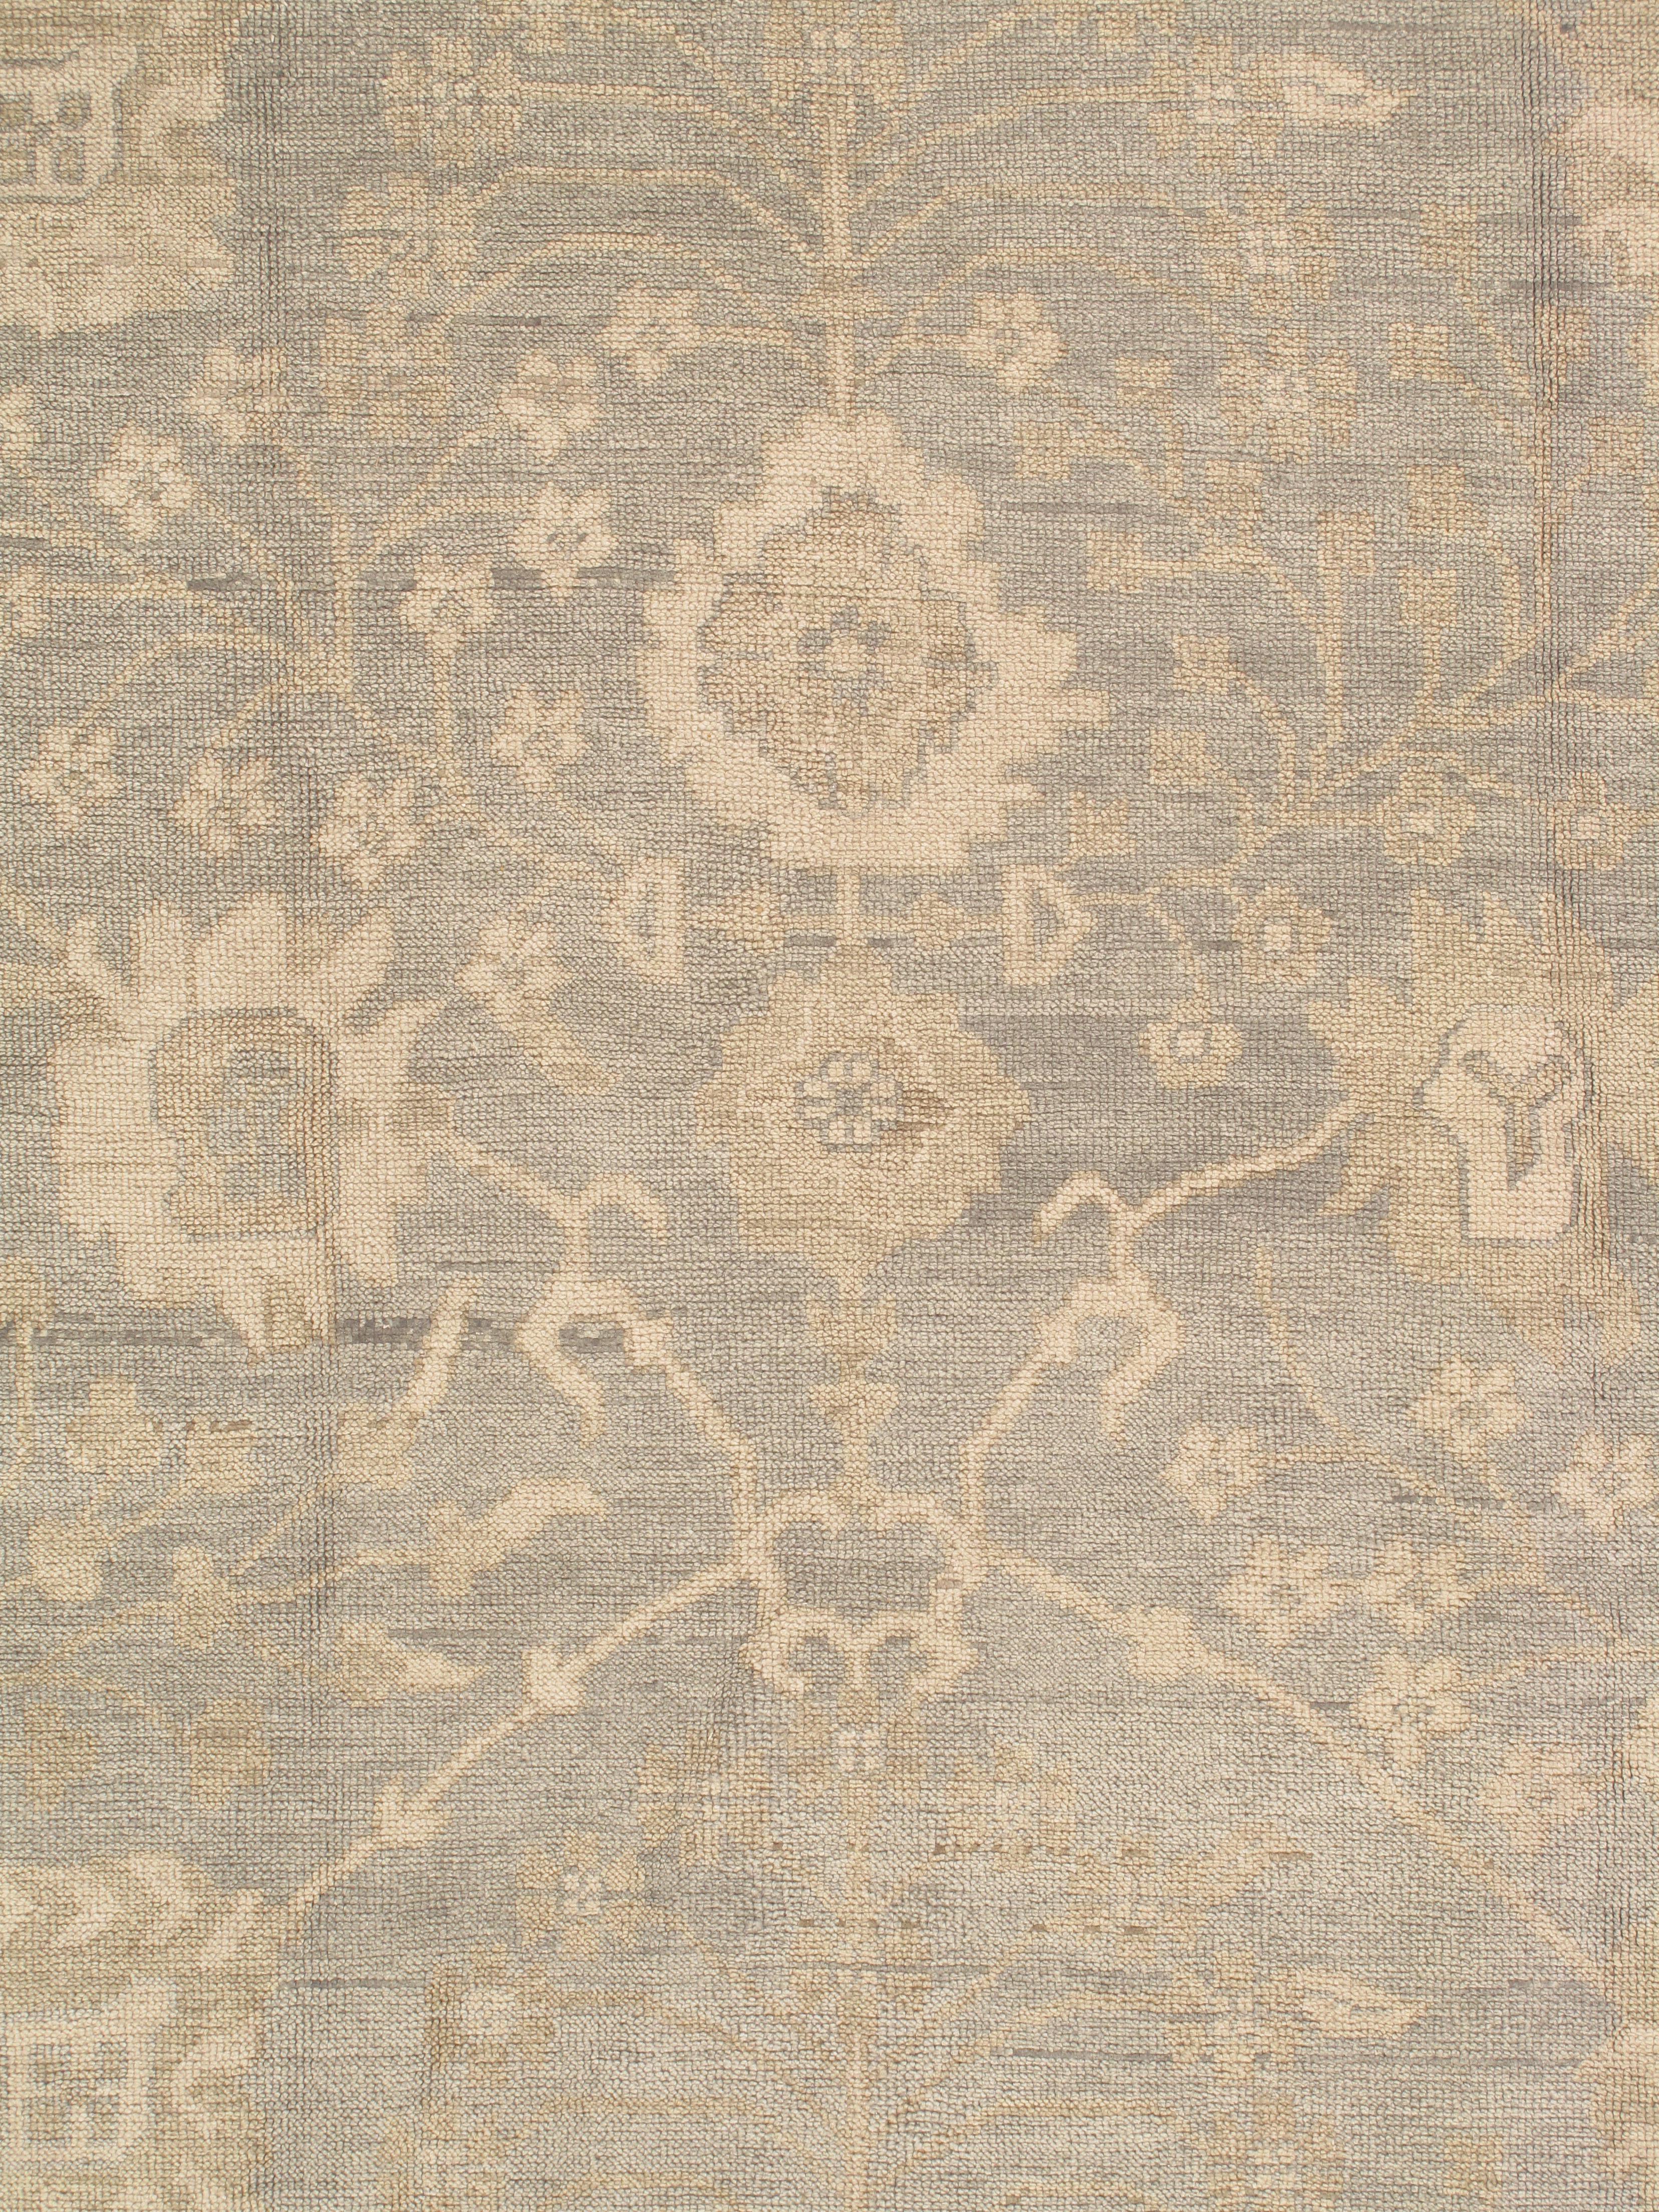 Indian Vintage Oushak Carpet, Oriental Rug, Handmade Green Grey, Ivory, Saffron For Sale